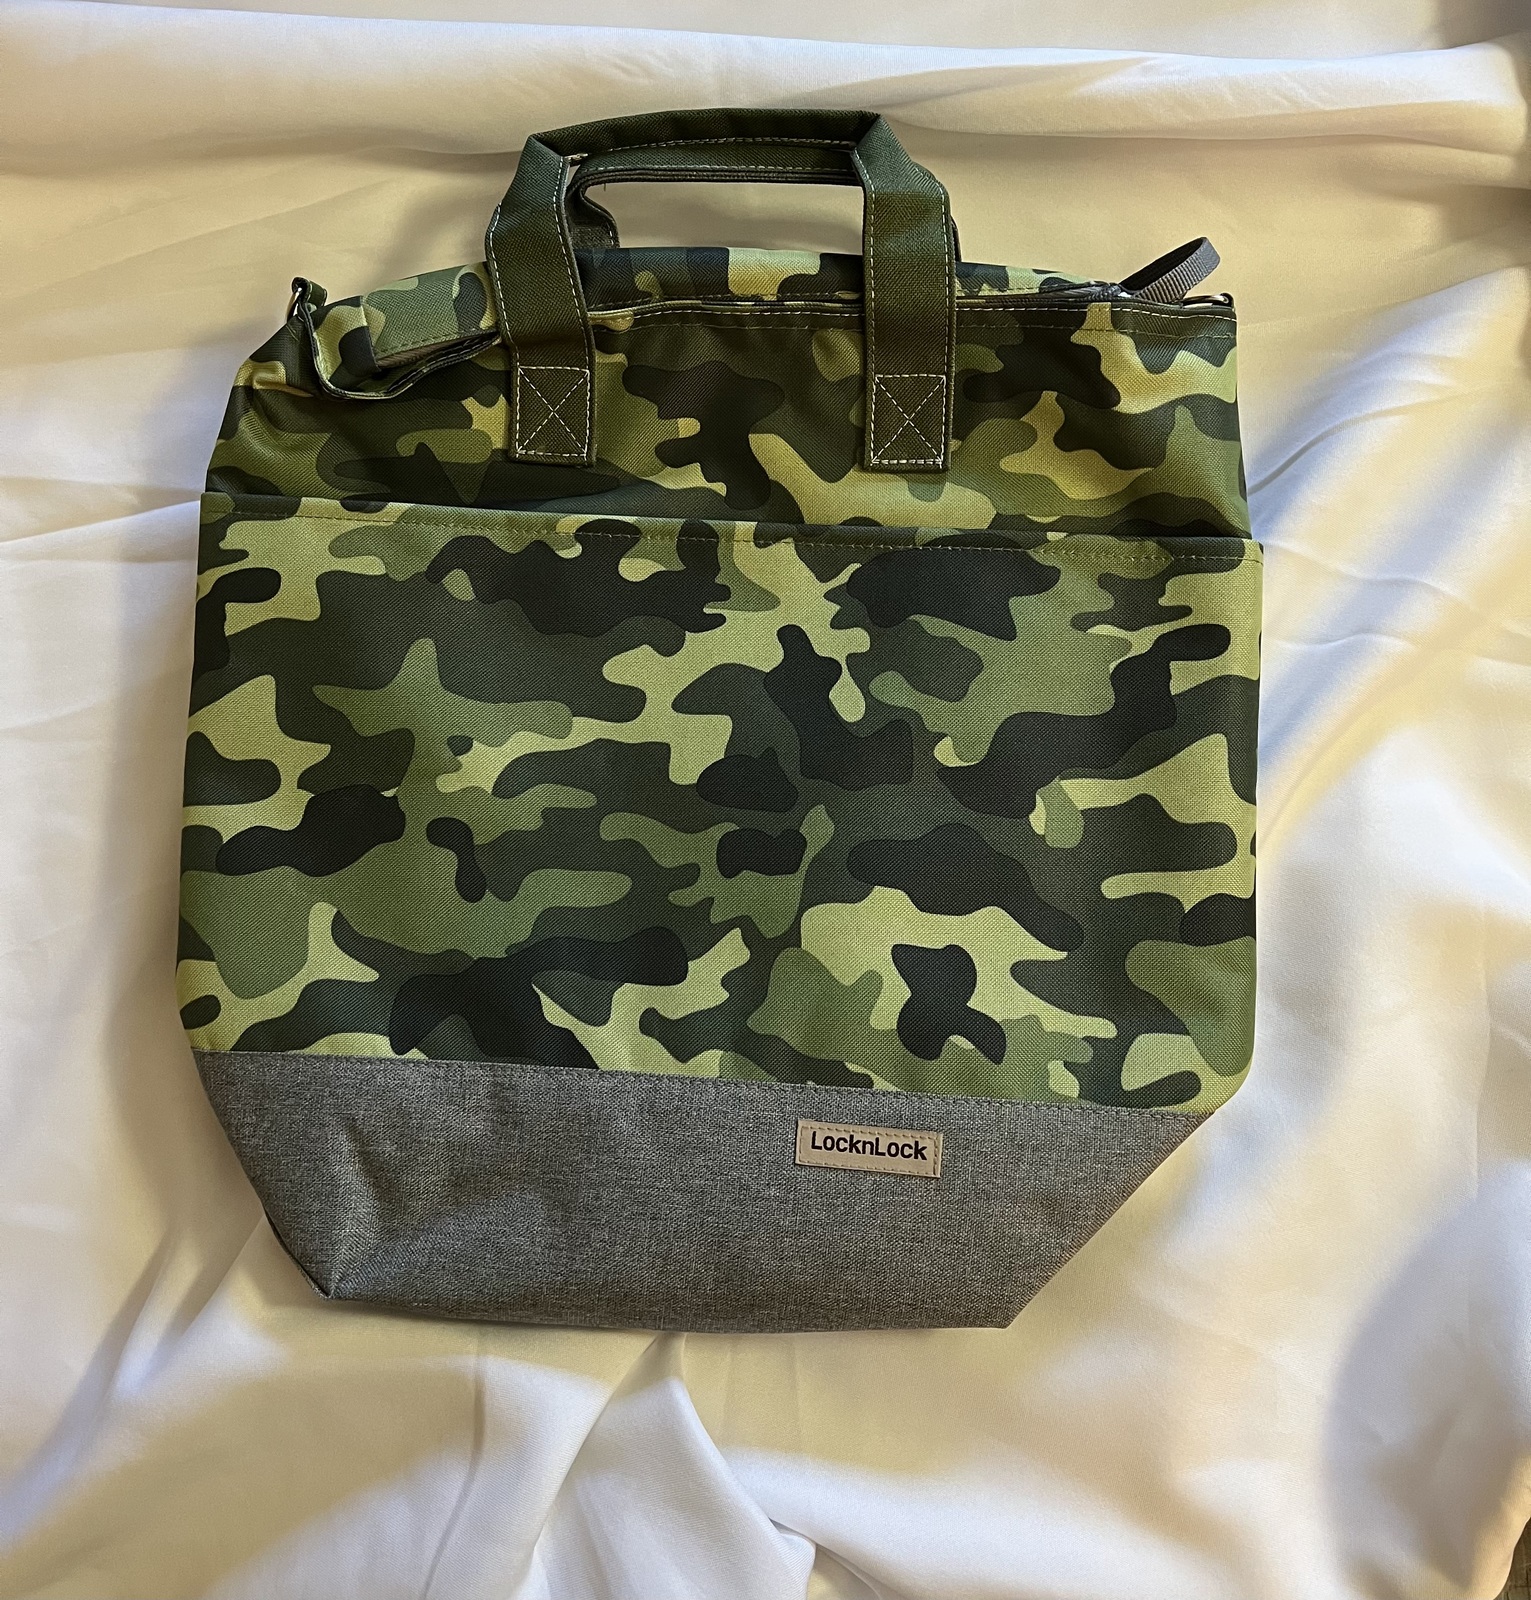 LocknLock Insulated Tote Bag Camo - $24.95